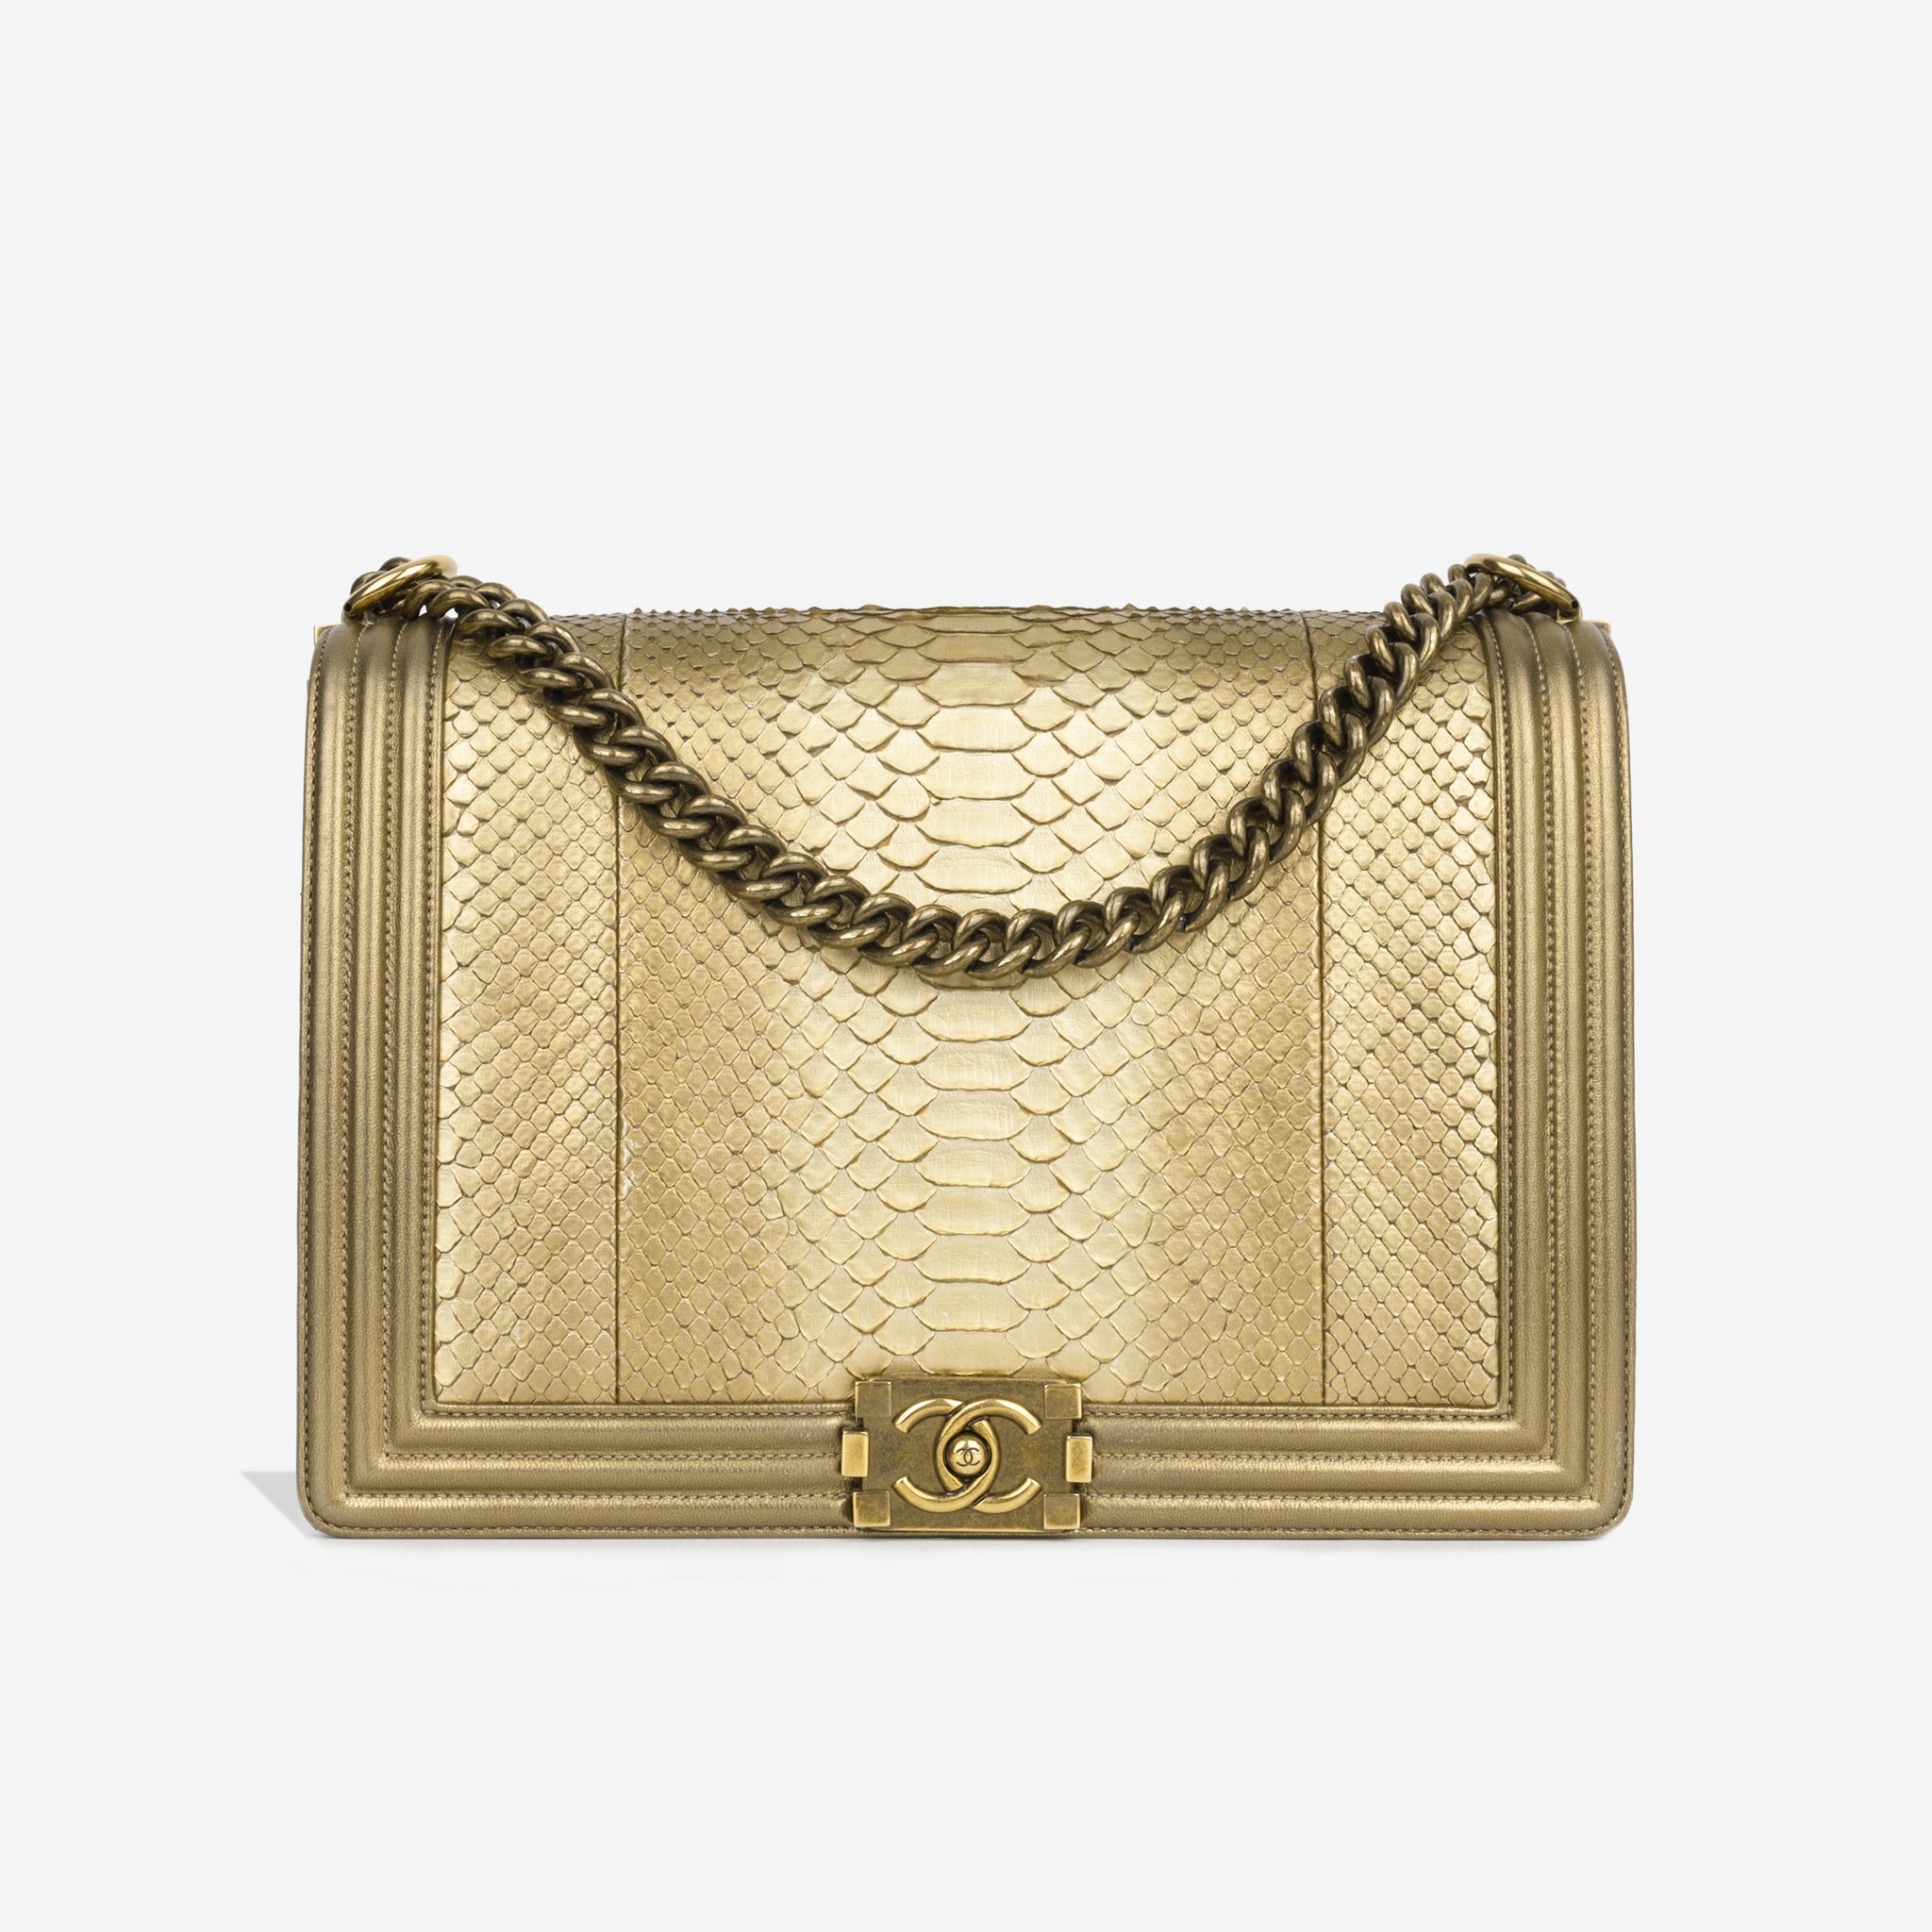 Chanel - Large Boy Bag - Gold Python - AGHW - Pre-Loved - 2014